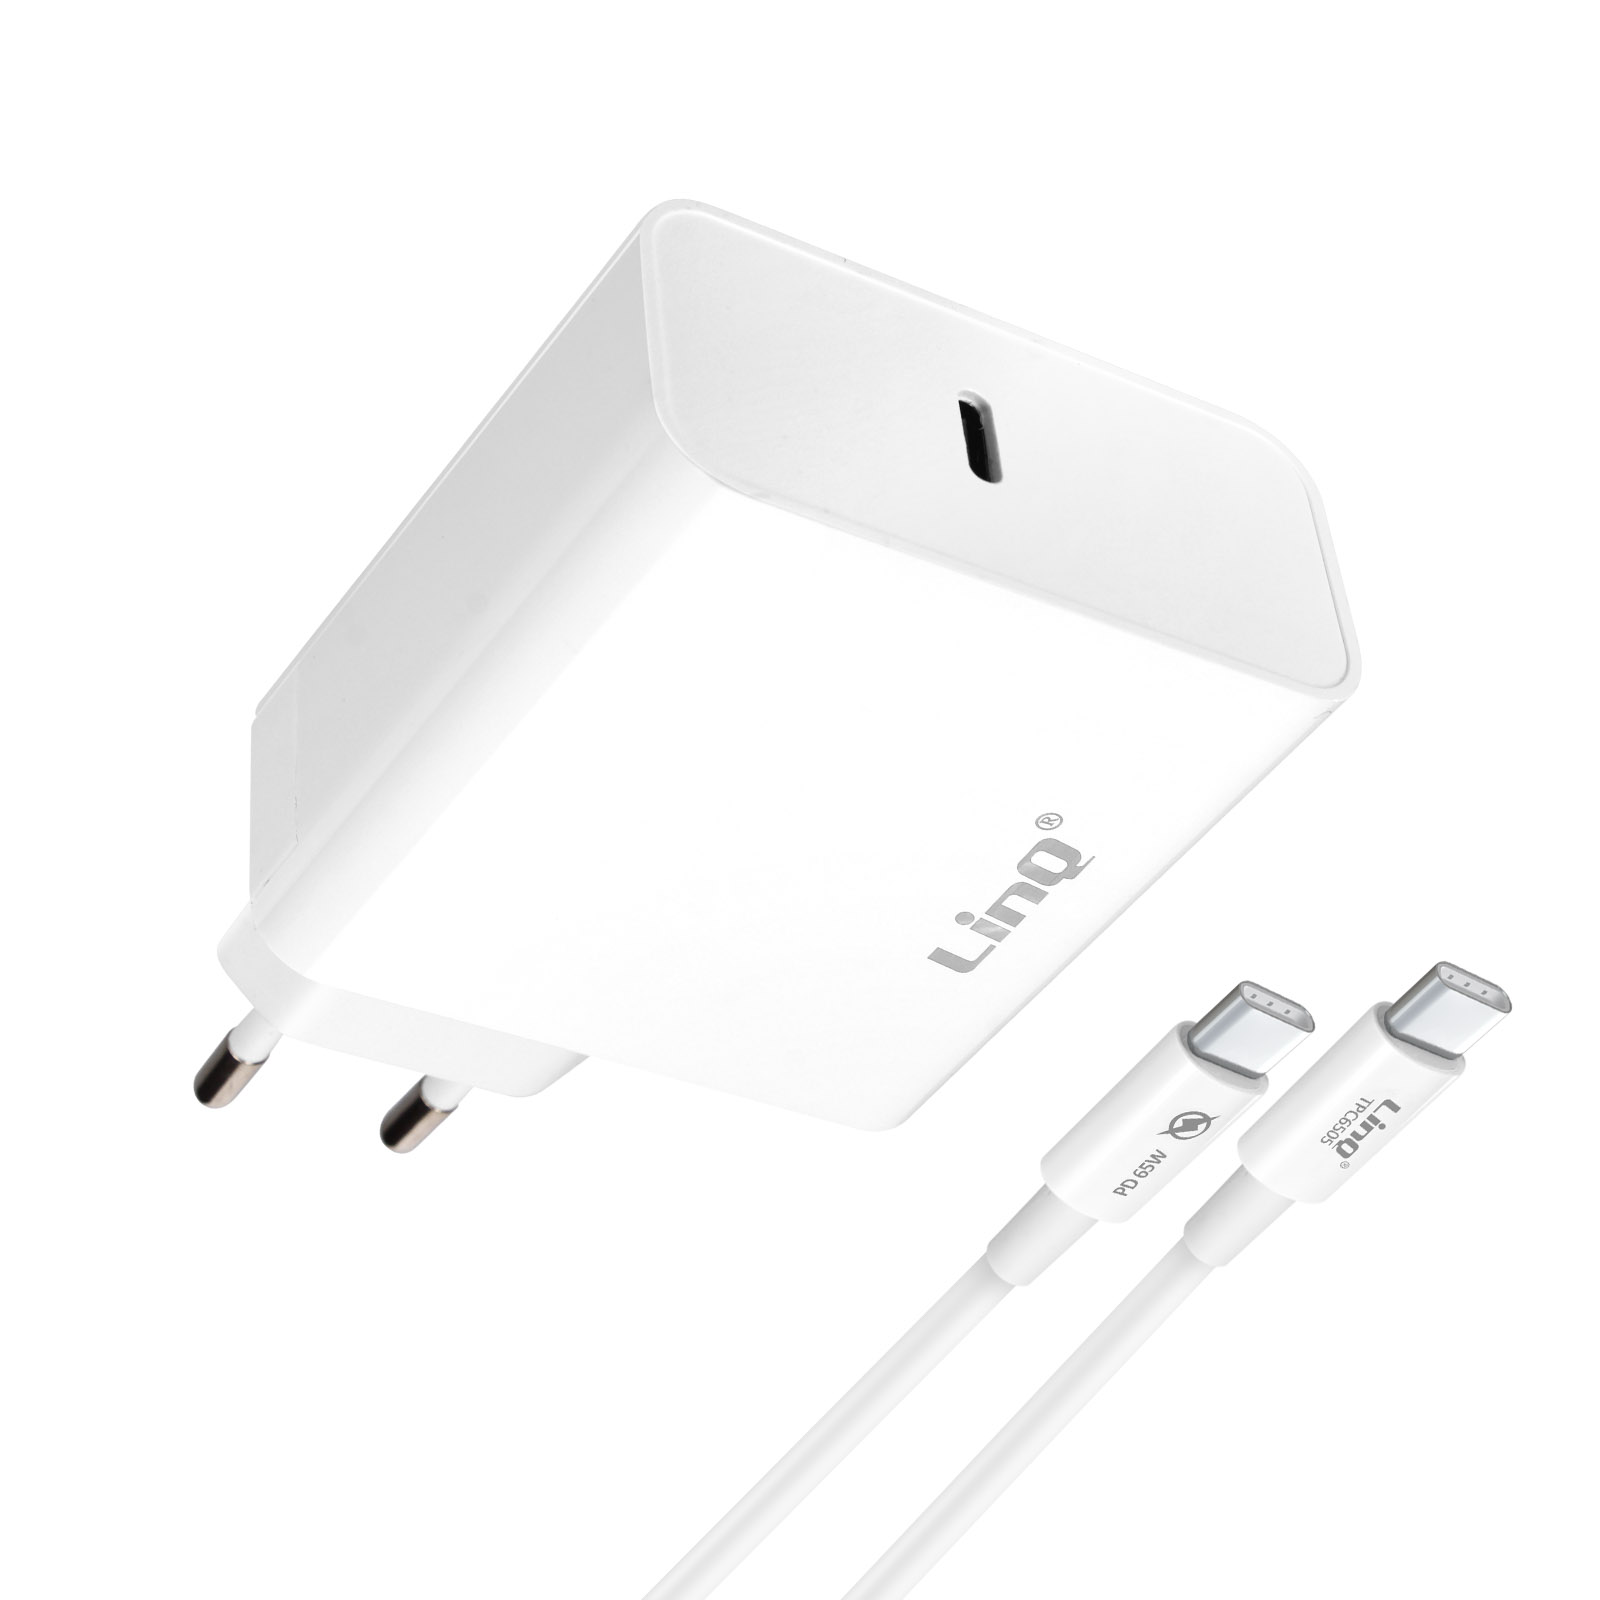 LINQ 65W, 2x USB Netzteile + Universal, Ports Weiß USB-C